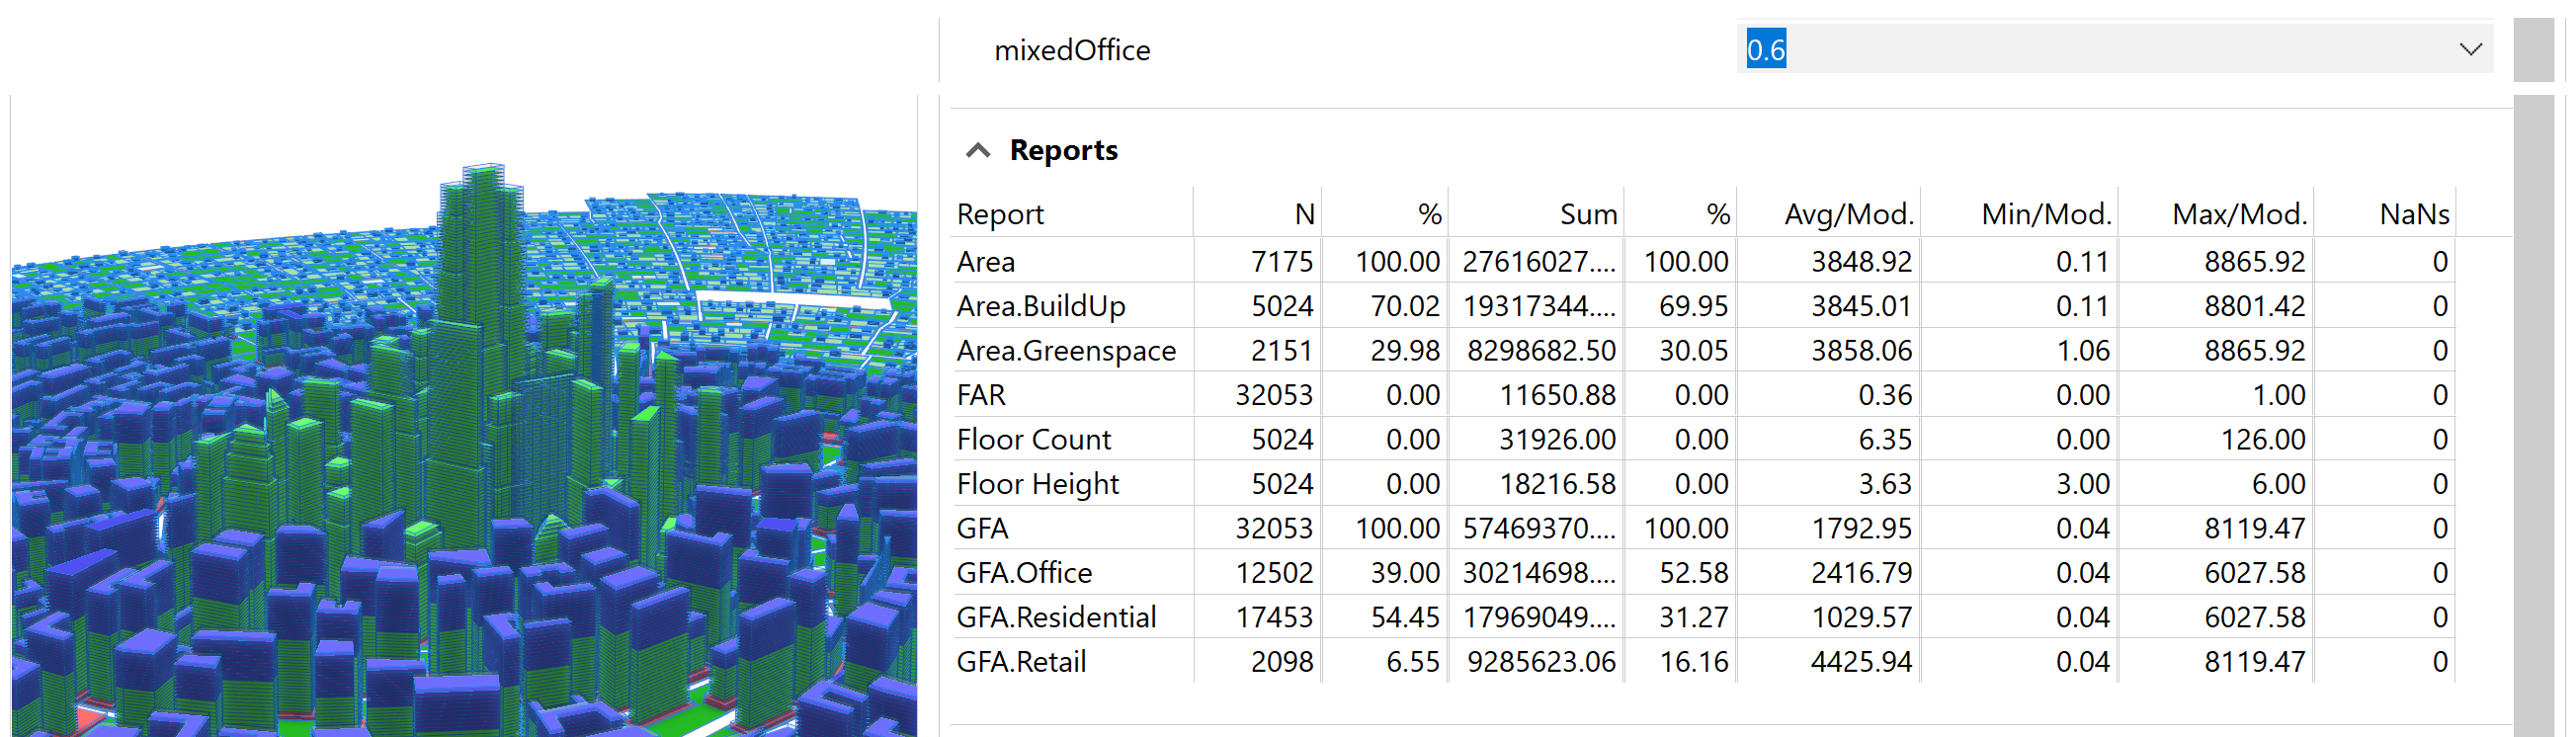 将 mixedOffice 更改为 0.6 并选择所有模型后的报表